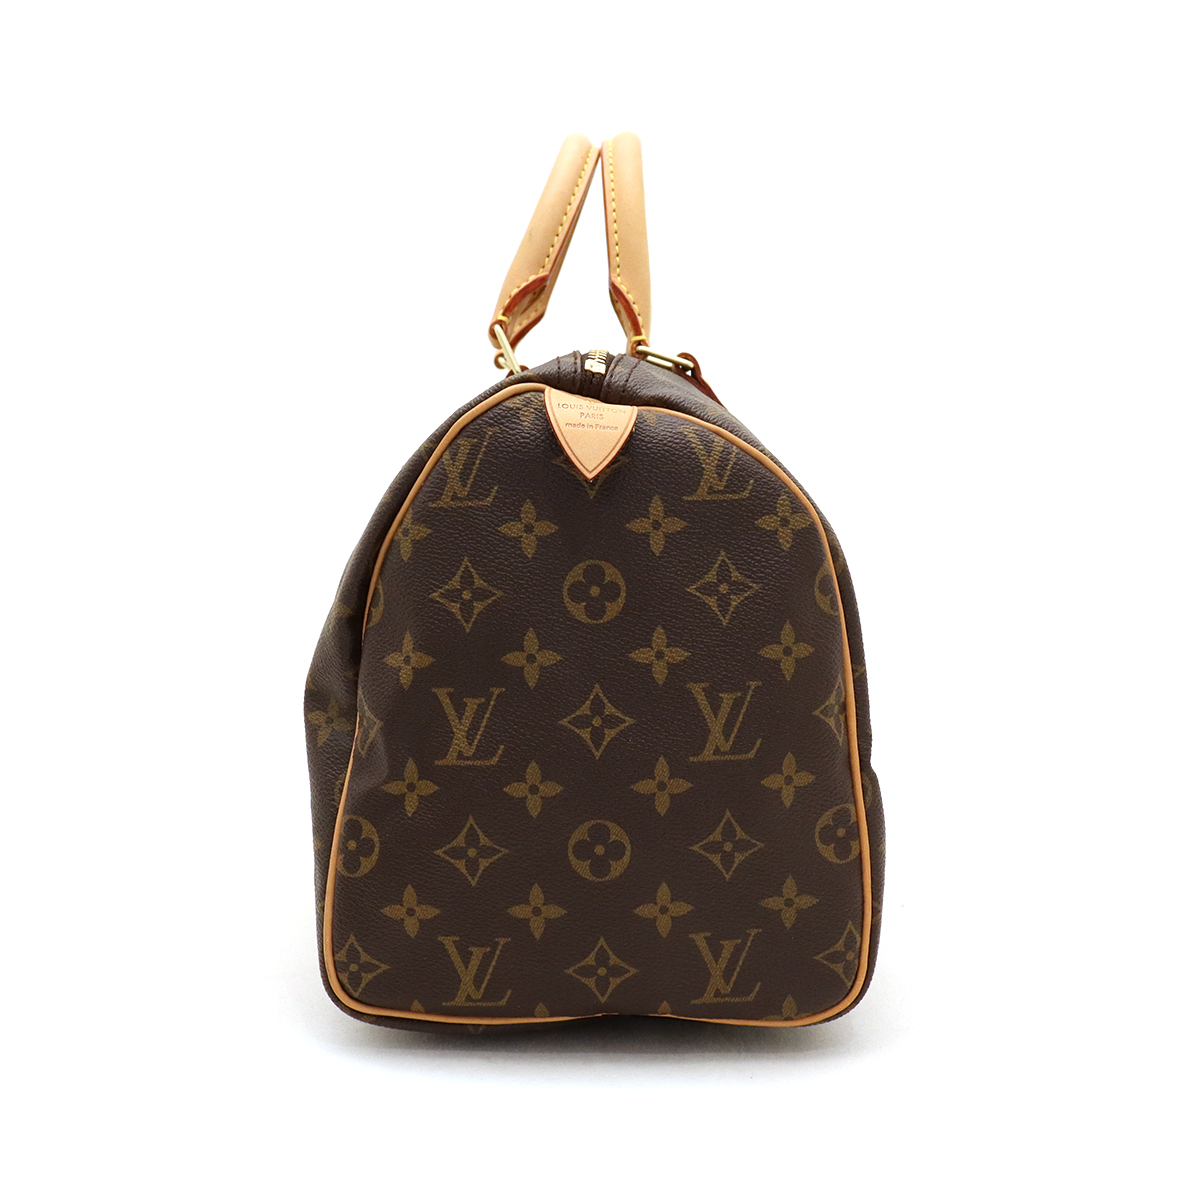 ルイヴィトン(Louis Vuitton) スピーディ30 M41526 ボストンバッグ 鍵 カデナ 保存袋付き モノグラム ブラウン